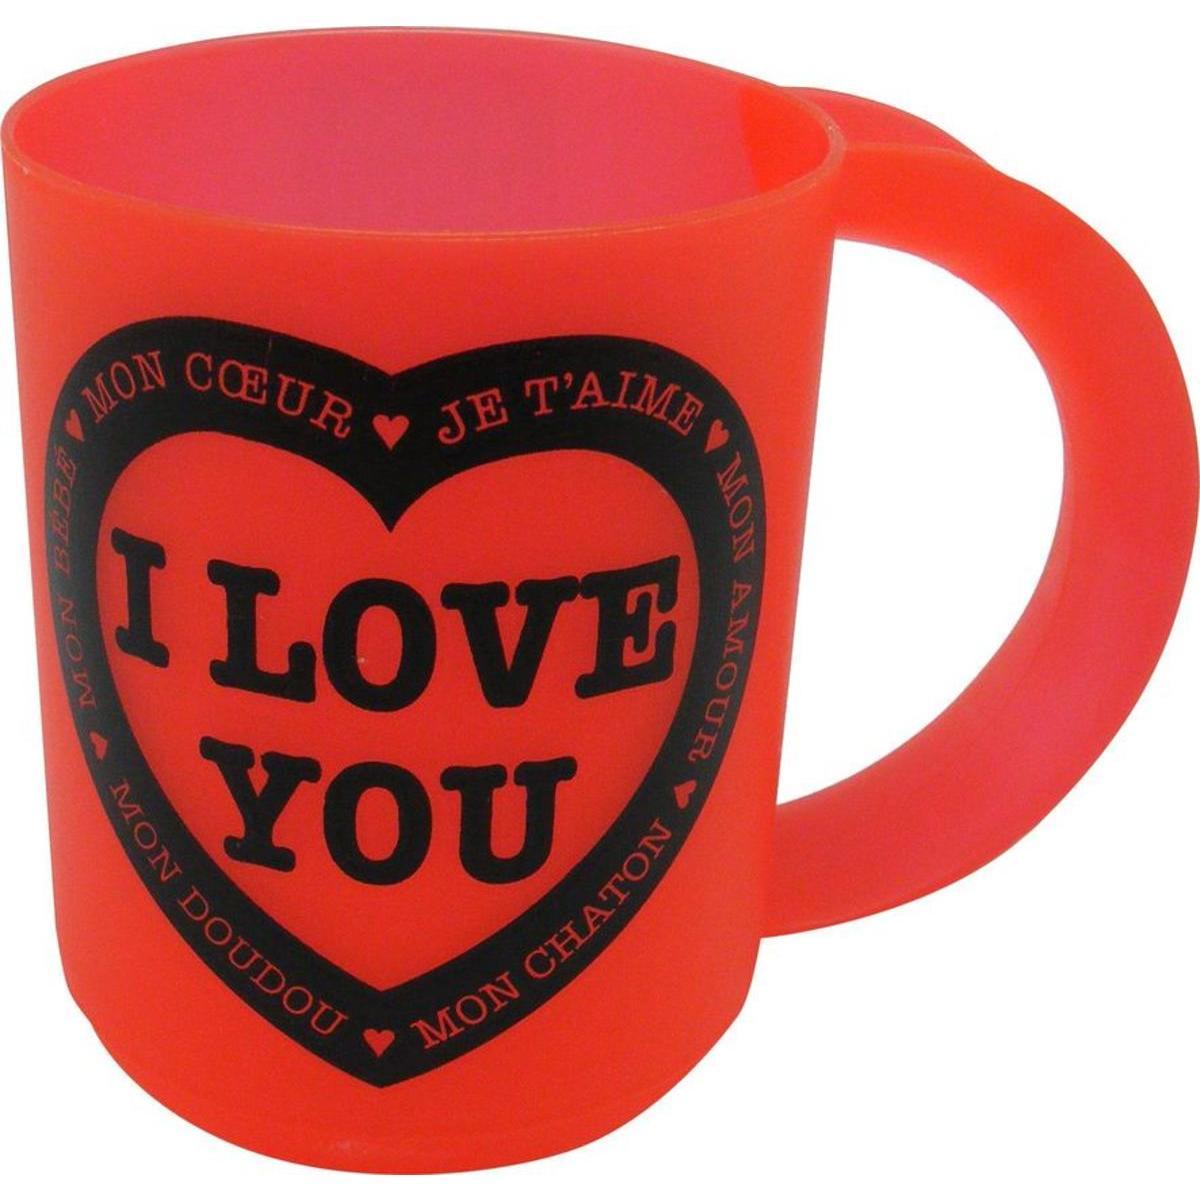 Mug love you